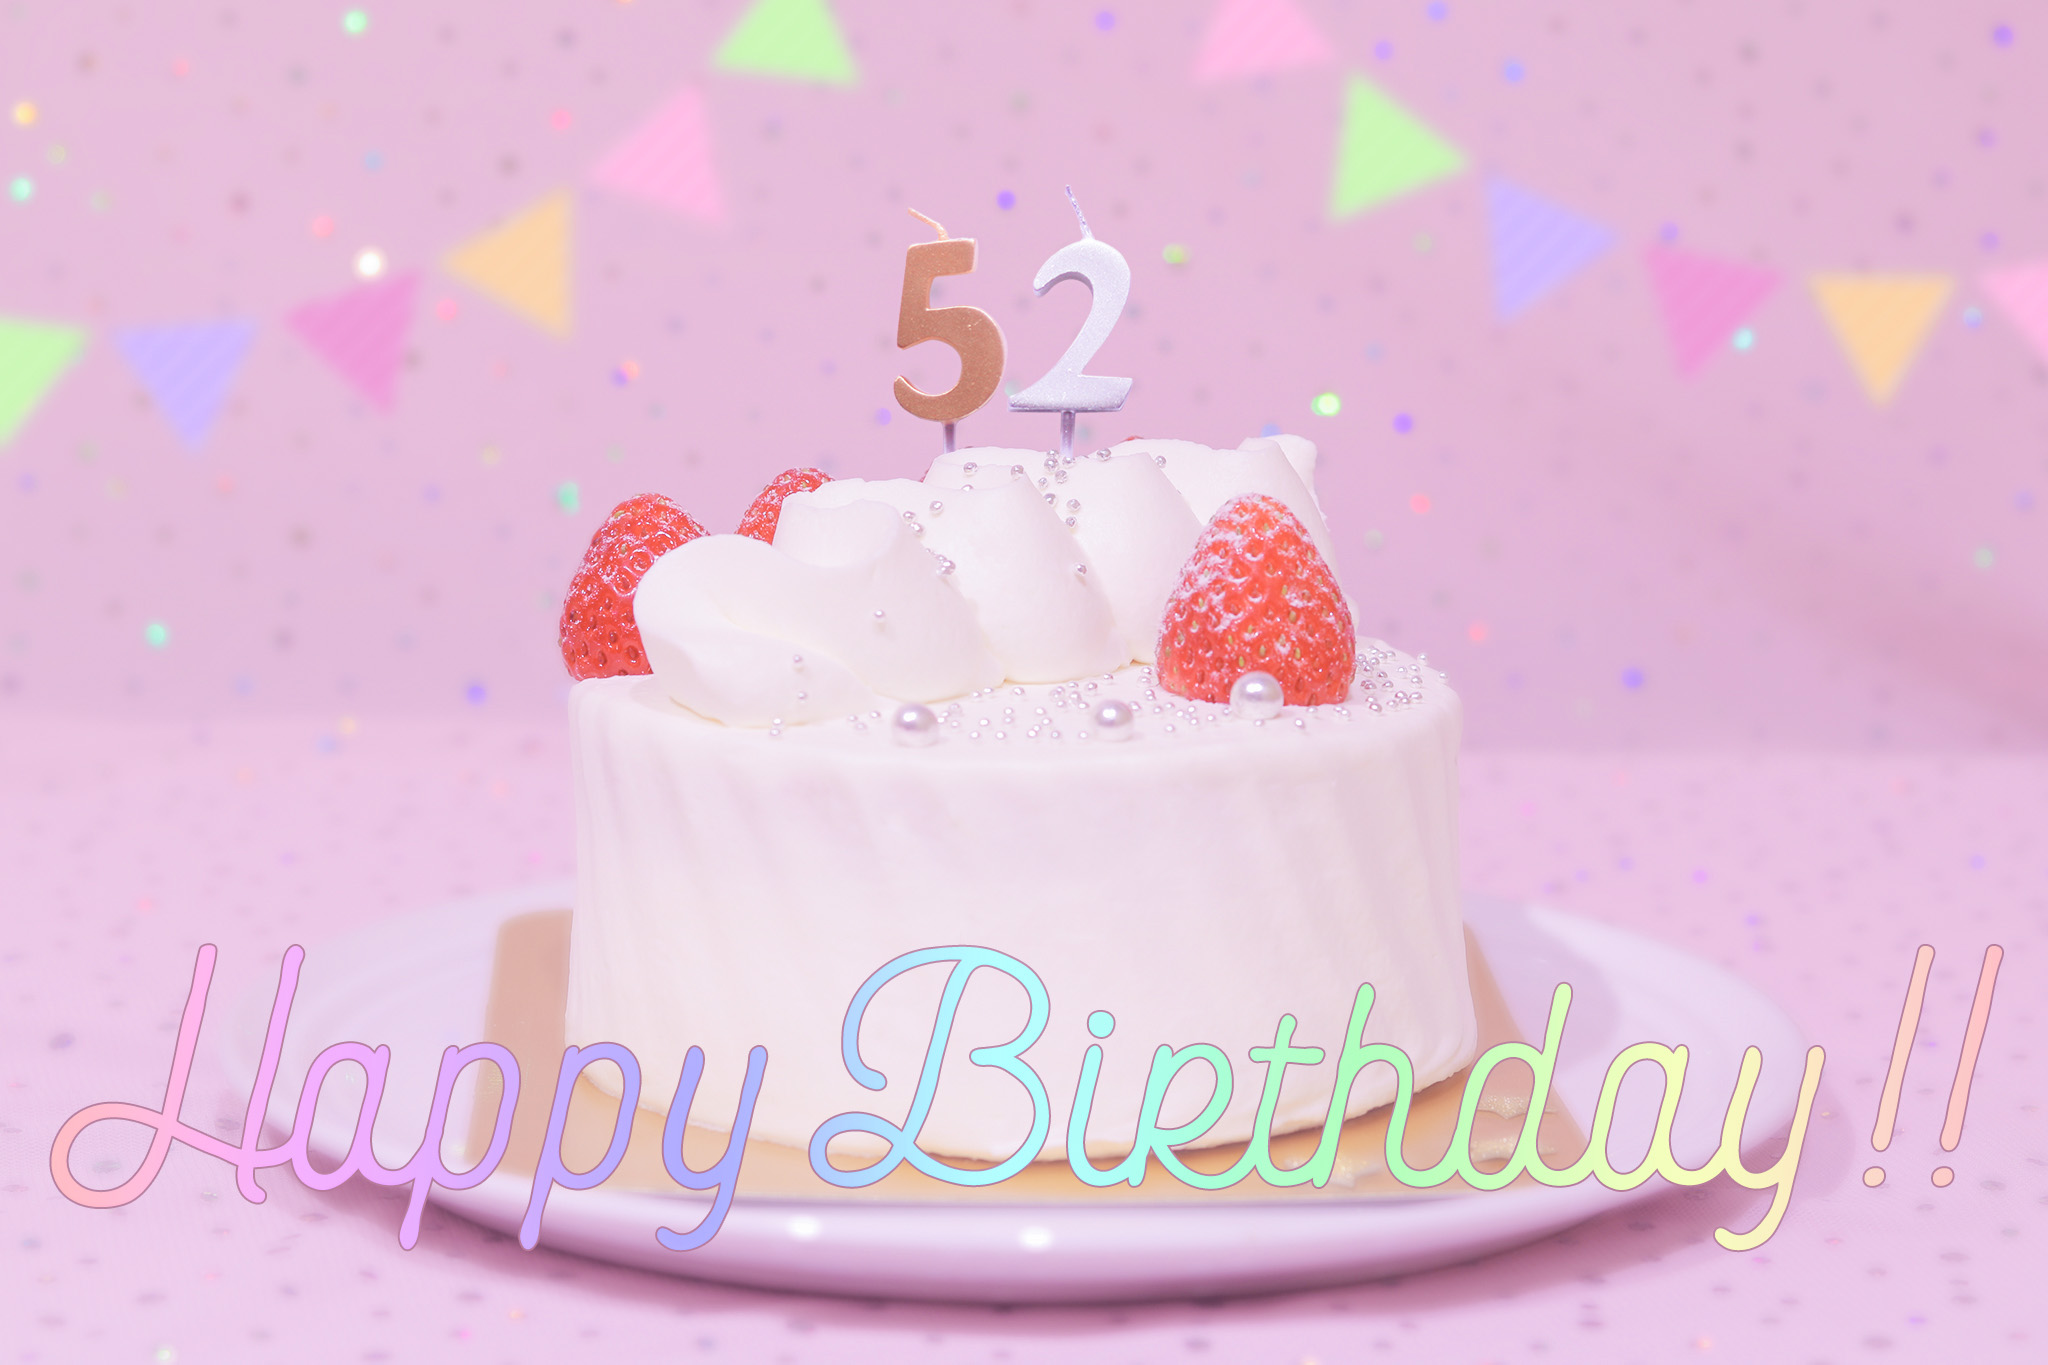 かわいい誕生日画像 ケーキとパステルカラーで可愛くお祝い 52歳編 のフリー画像 おしゃれなフリー写真素材 Girly Drop